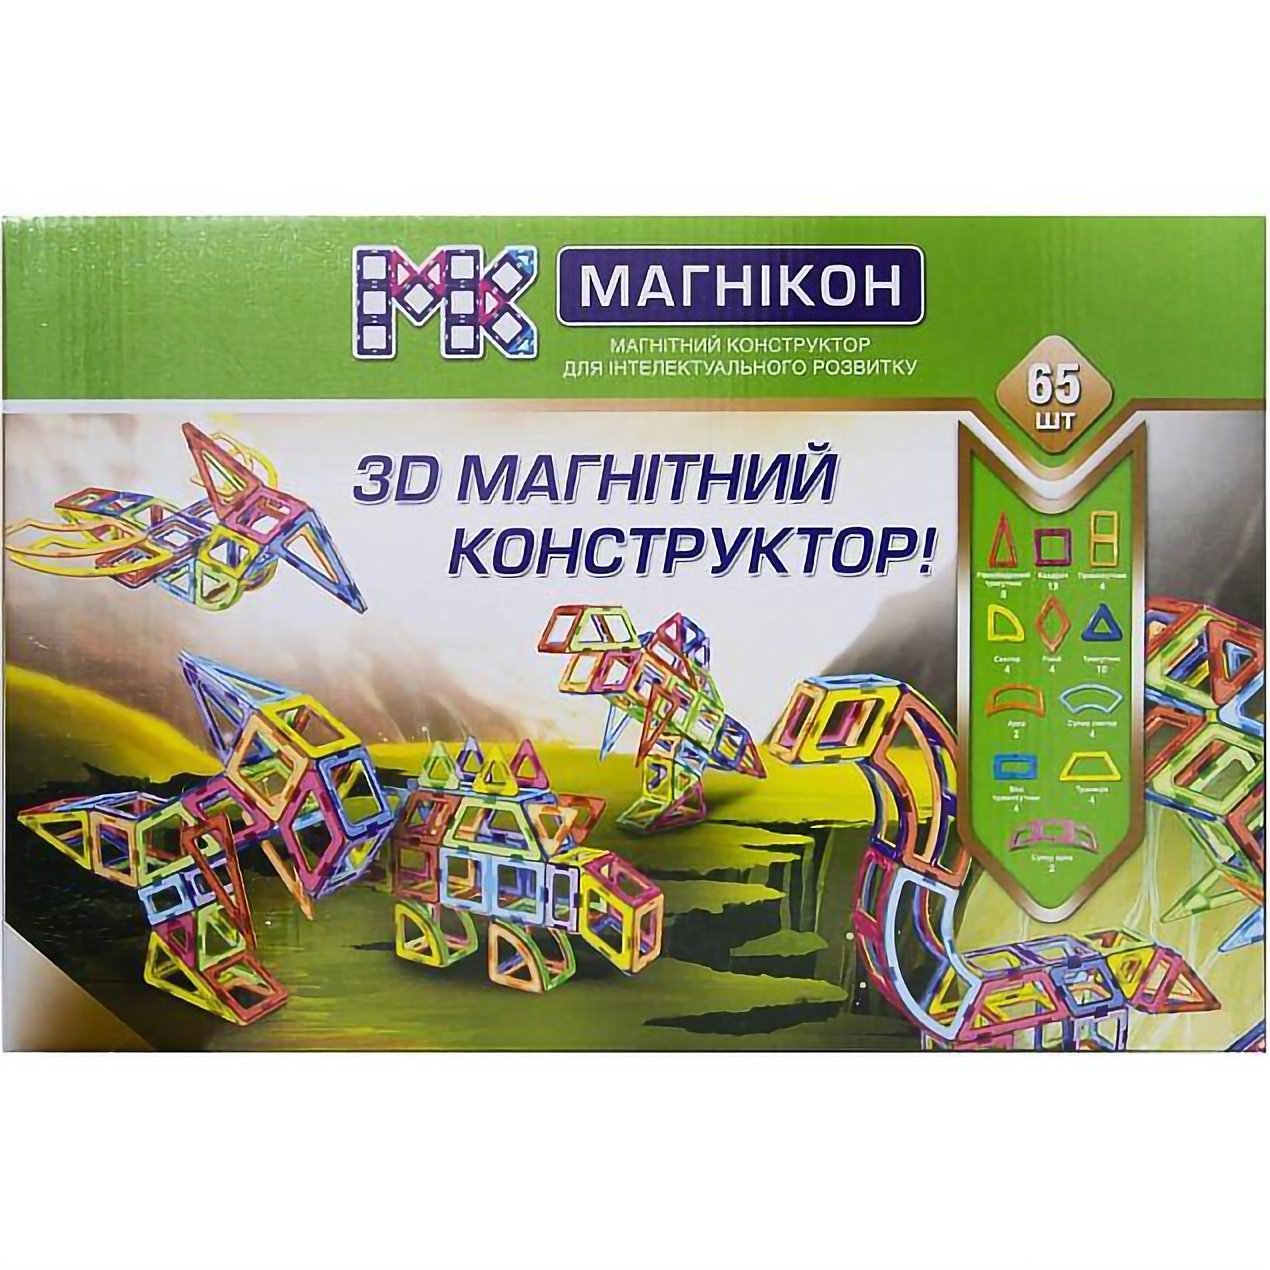 3D магнітний конструктор Магнікон Dino, 65 елементів (МК-65) - фото 1